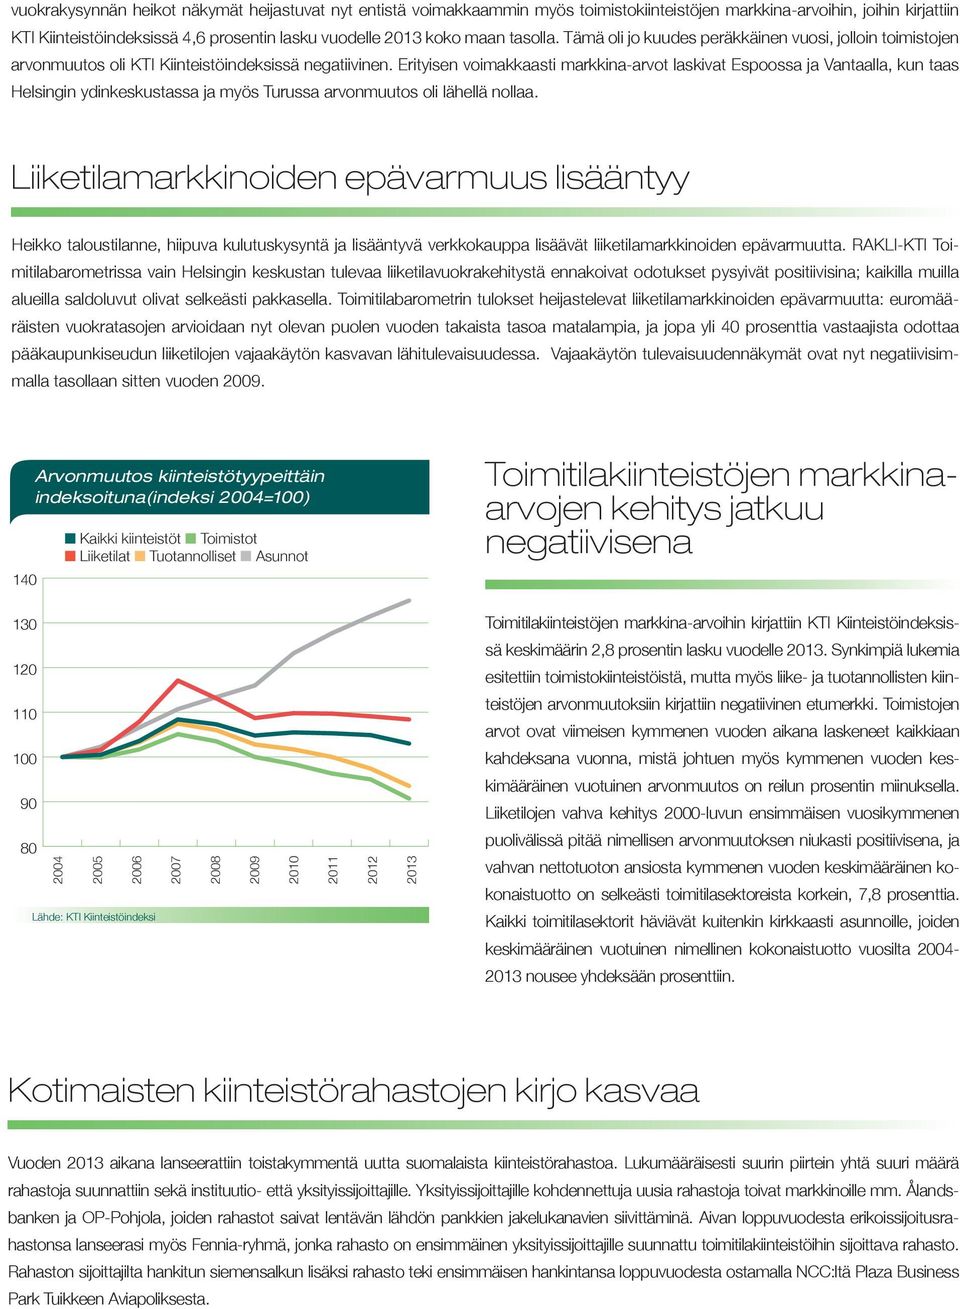 Erityisen voimakkaasti markkina-arvot laskivat Espoossa ja Vantaalla, kun taas Helsingin ydinkeskustassa ja myös Turussa arvonmuutos oli lähellä nollaa.